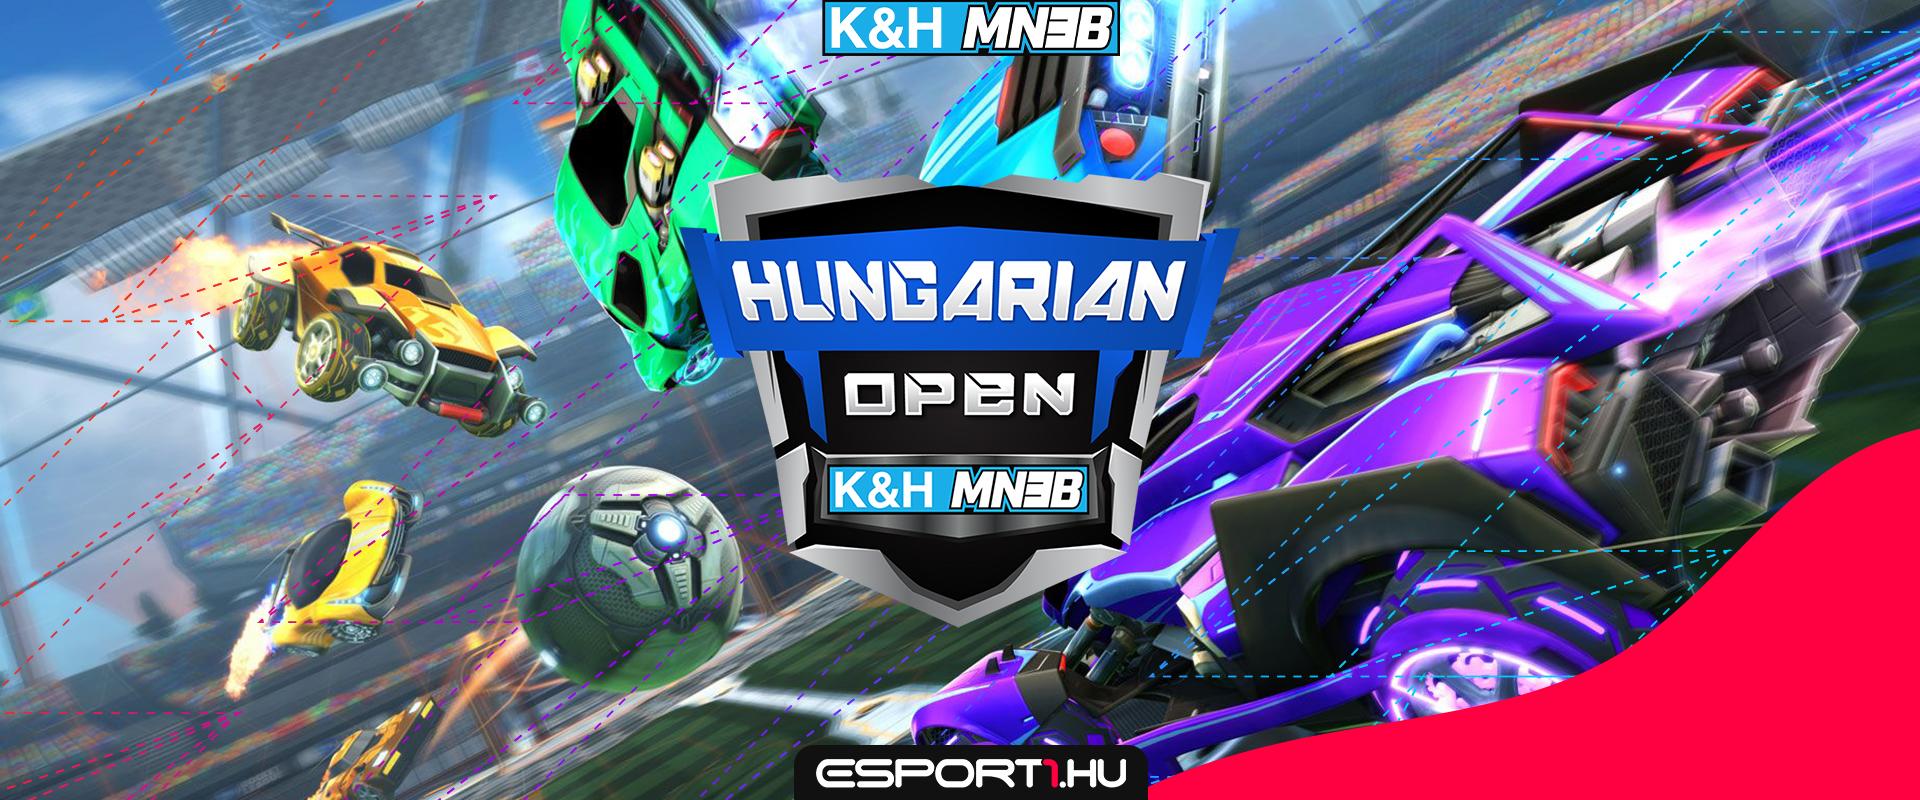 Véglegessé vált a Hungarian Open zárt selejtezőjének névsora